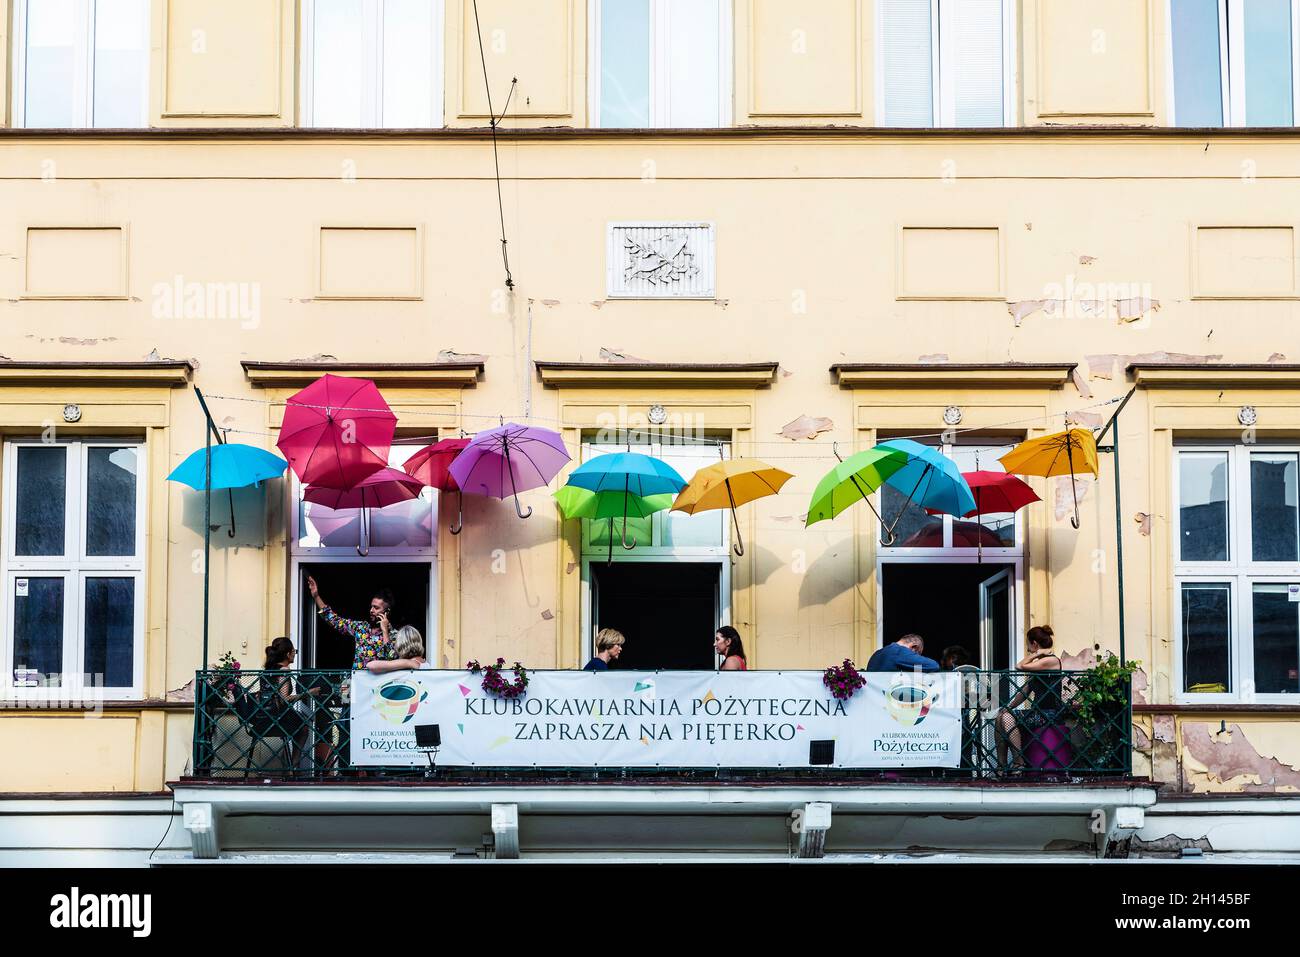 Varsovie, Pologne - 1er septembre 2018 : Nowy Swiat, rue commerçante avec un bar avec parasols multicolores et des gens autour de la vieille ville de Varsovie, po Banque D'Images